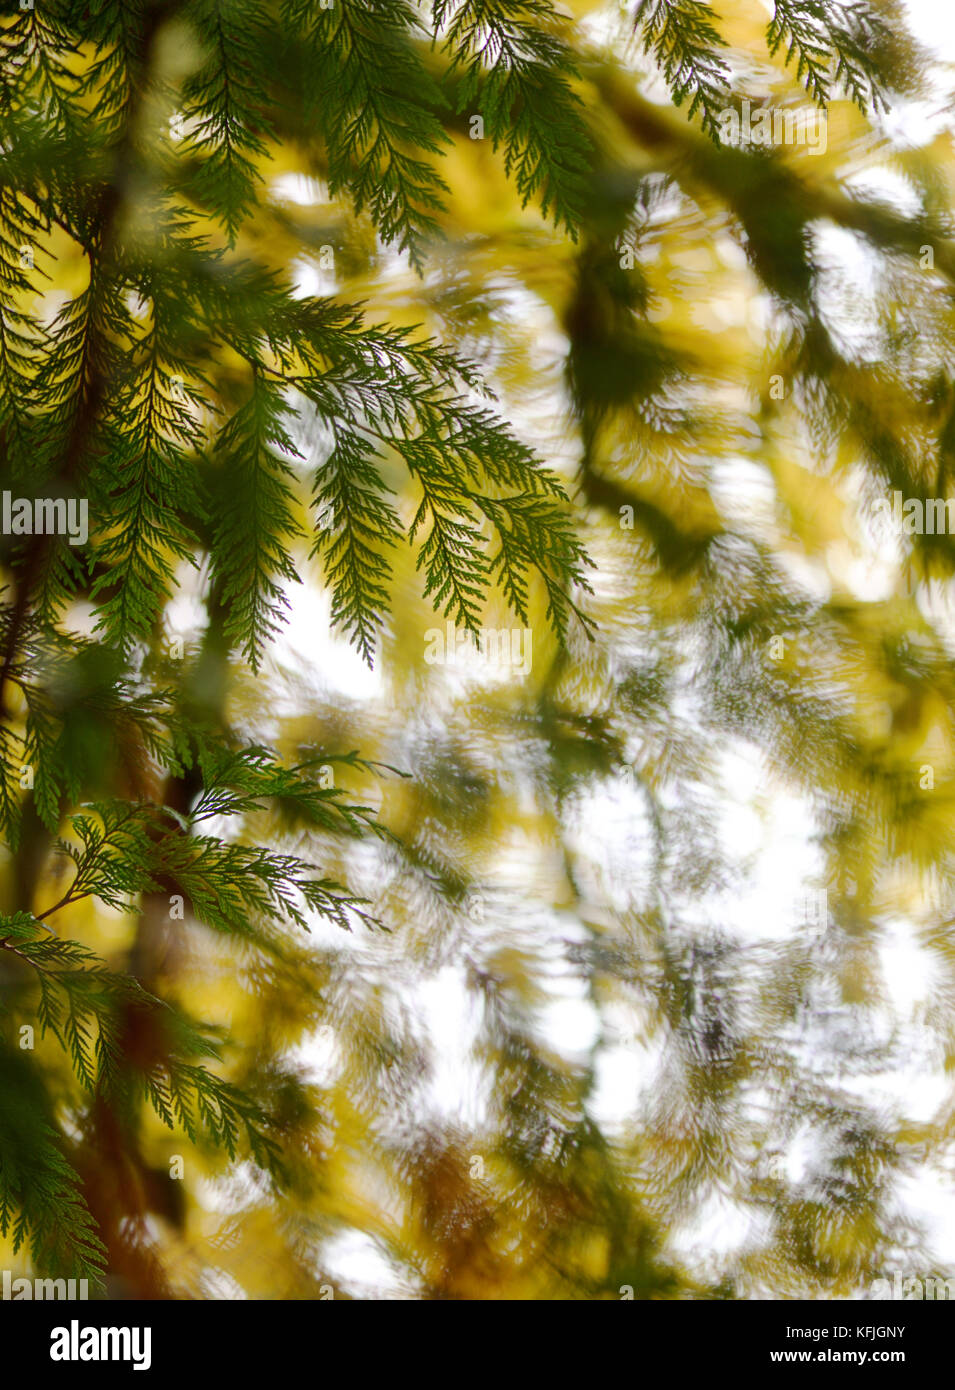 Résumé artistique nature gros plan de branches de cèdre et de feuilles d'autum jaunes en arrière-plan. Île de Vancouver, Colombie-Britannique, Canada. Banque D'Images